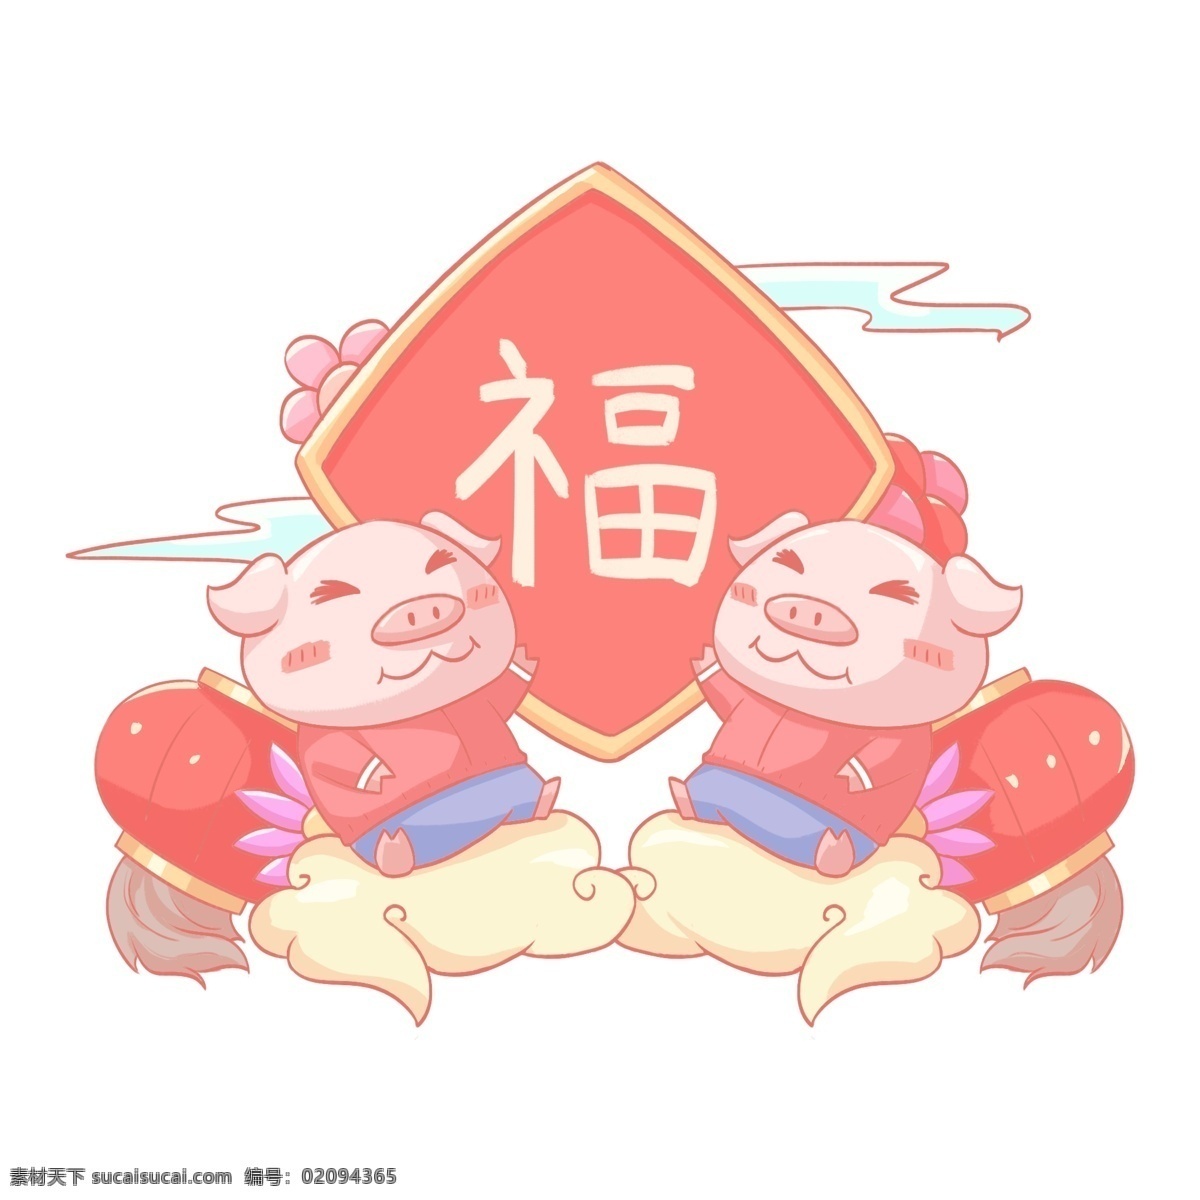 2019 农历 新年 猪年 迎 福 小 猪 人物 新年快乐 灯笼 云彩 福字 猪年大吉 小猪 猪年迎福 卡通手绘风格